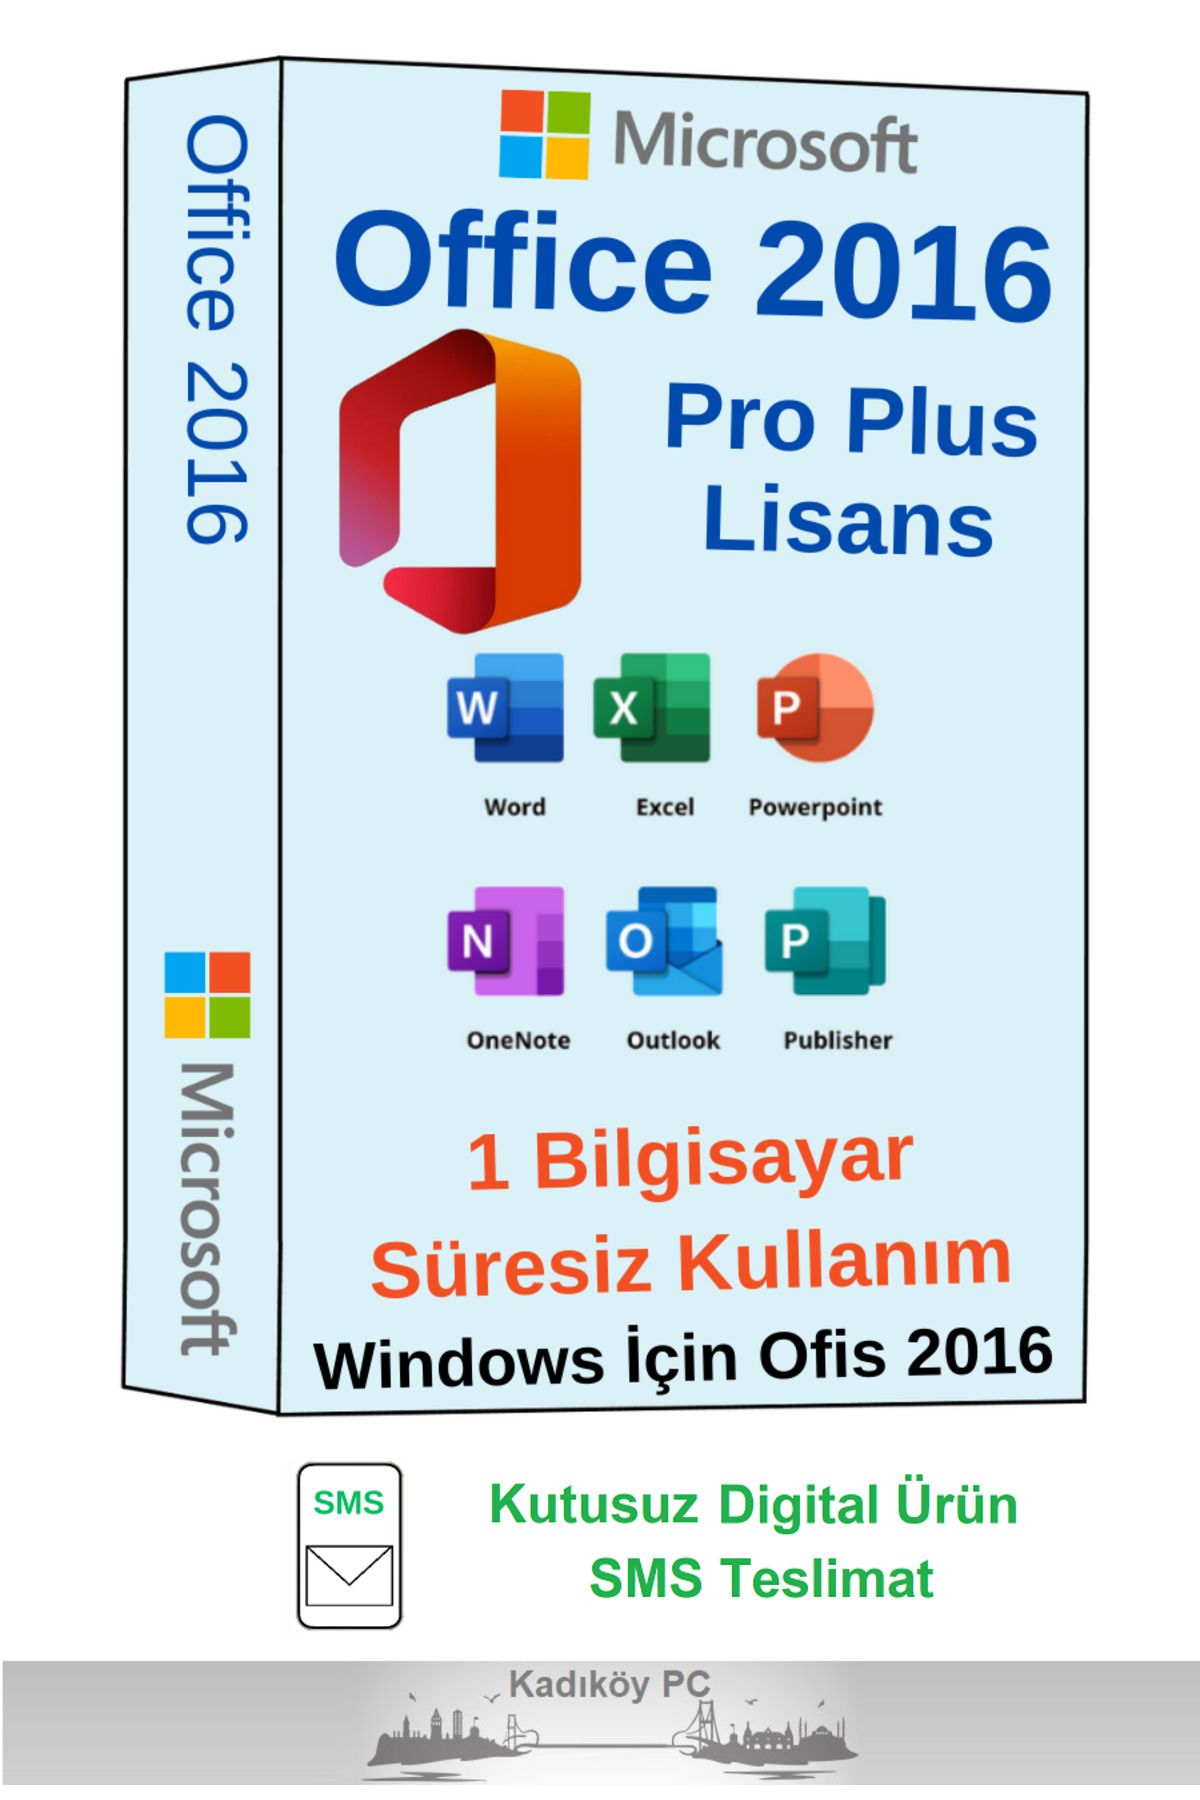 Microsoft Office 2016 Pro Plus Lisans - Windows 10 Ve Windows 11 Için - Sms Hemen Teslimat - Garantili